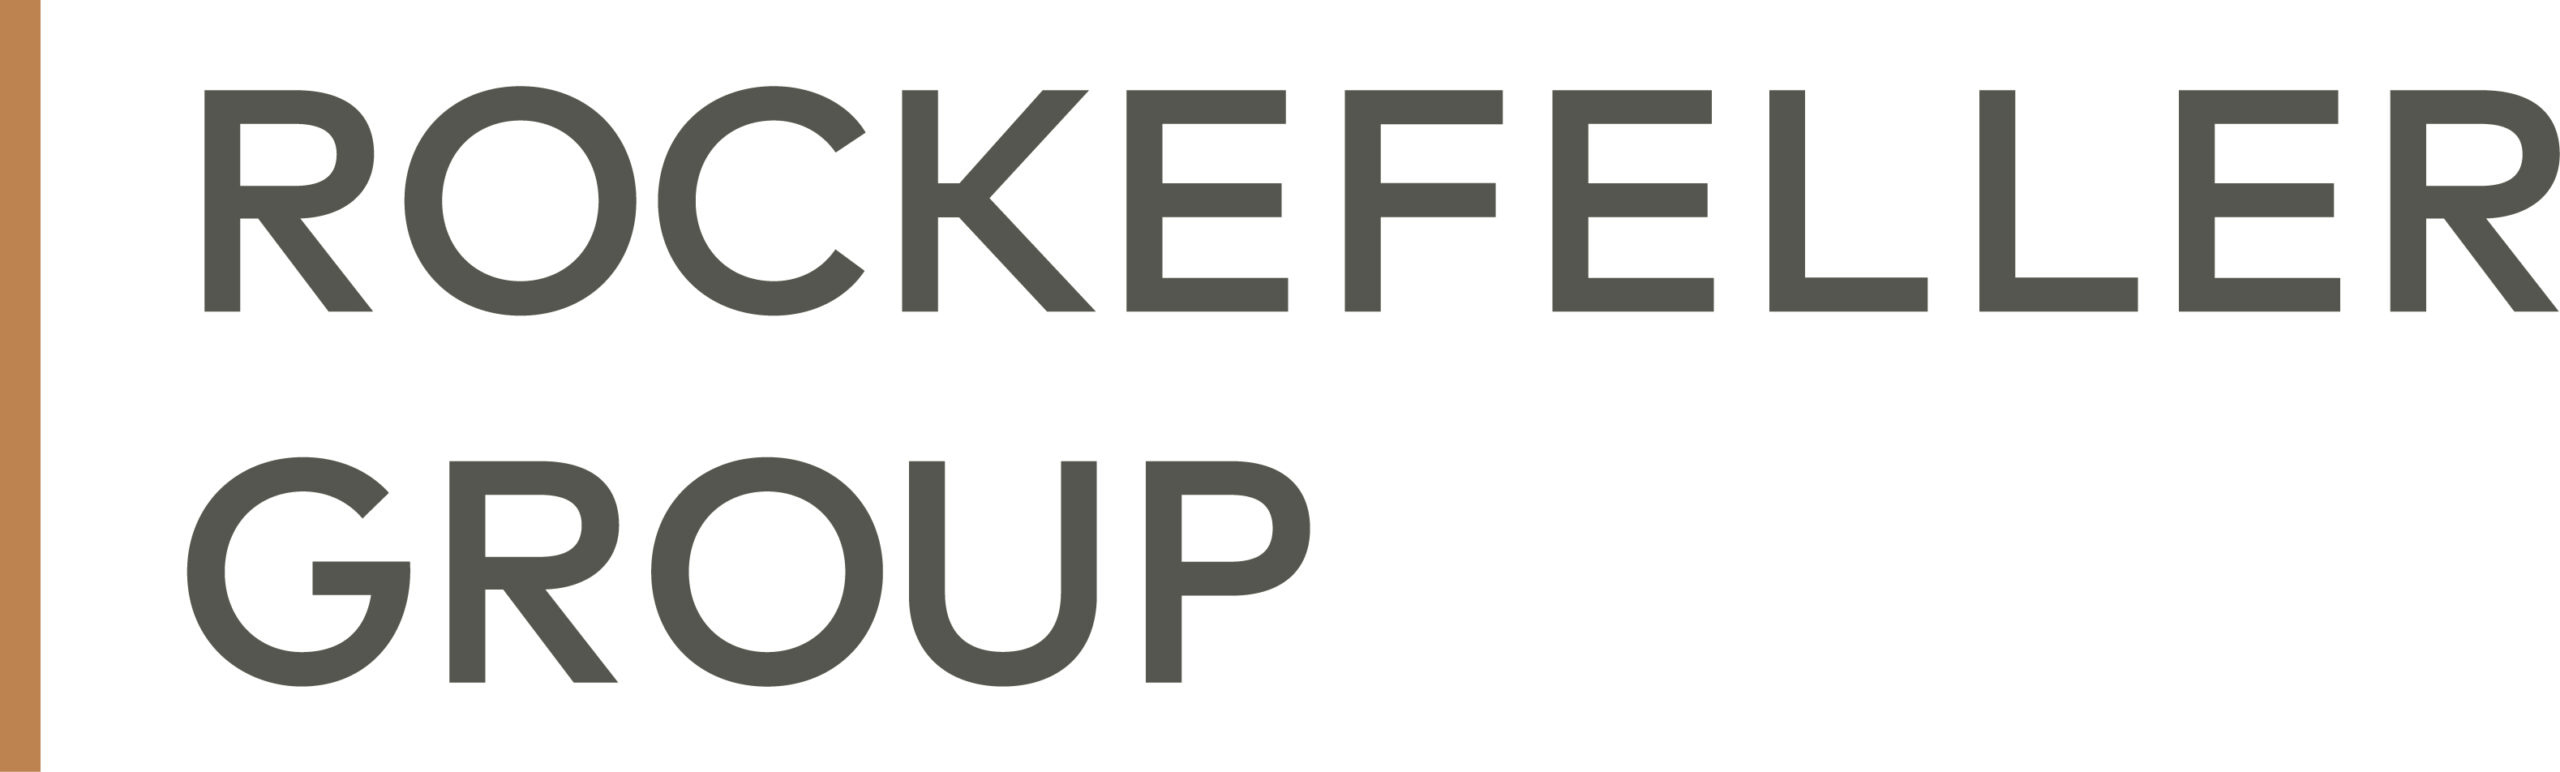 rockefeller group logo